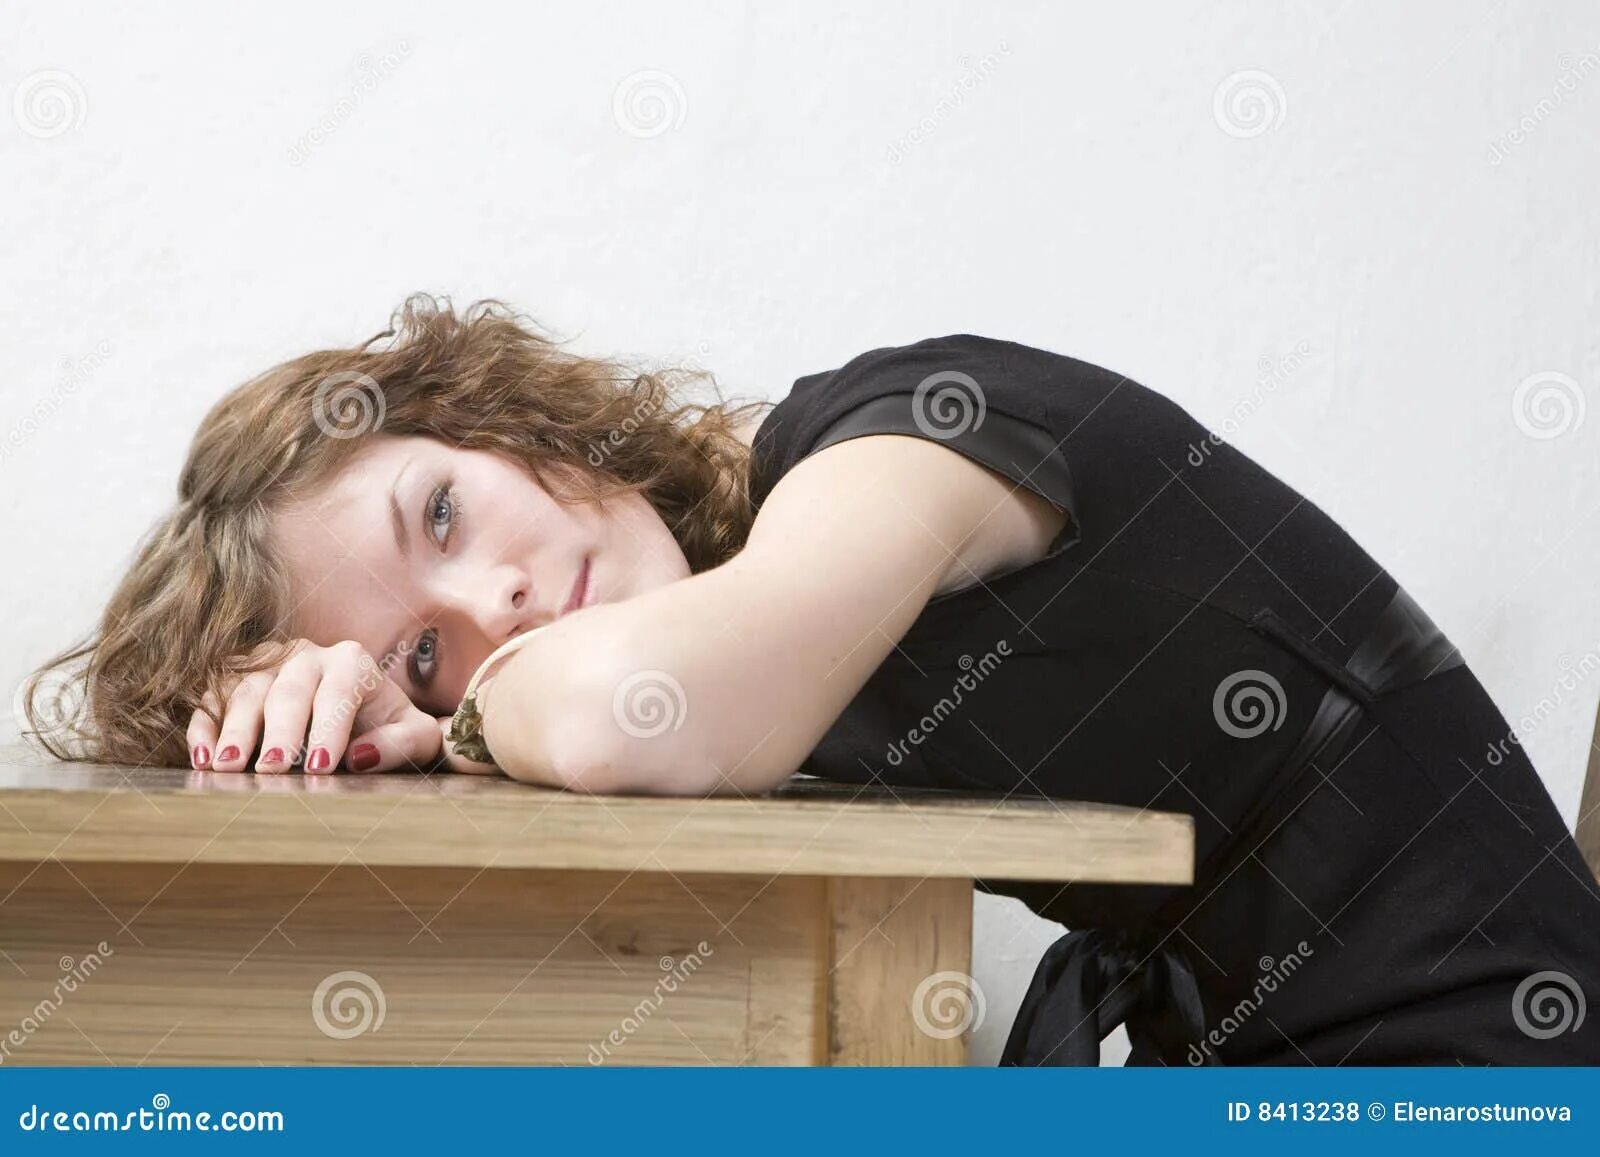 Положил на стол и вошел. Девушка лежит на столе головой. Человек лежит на столе. Девушка положила голову на стол. Головой об стол.